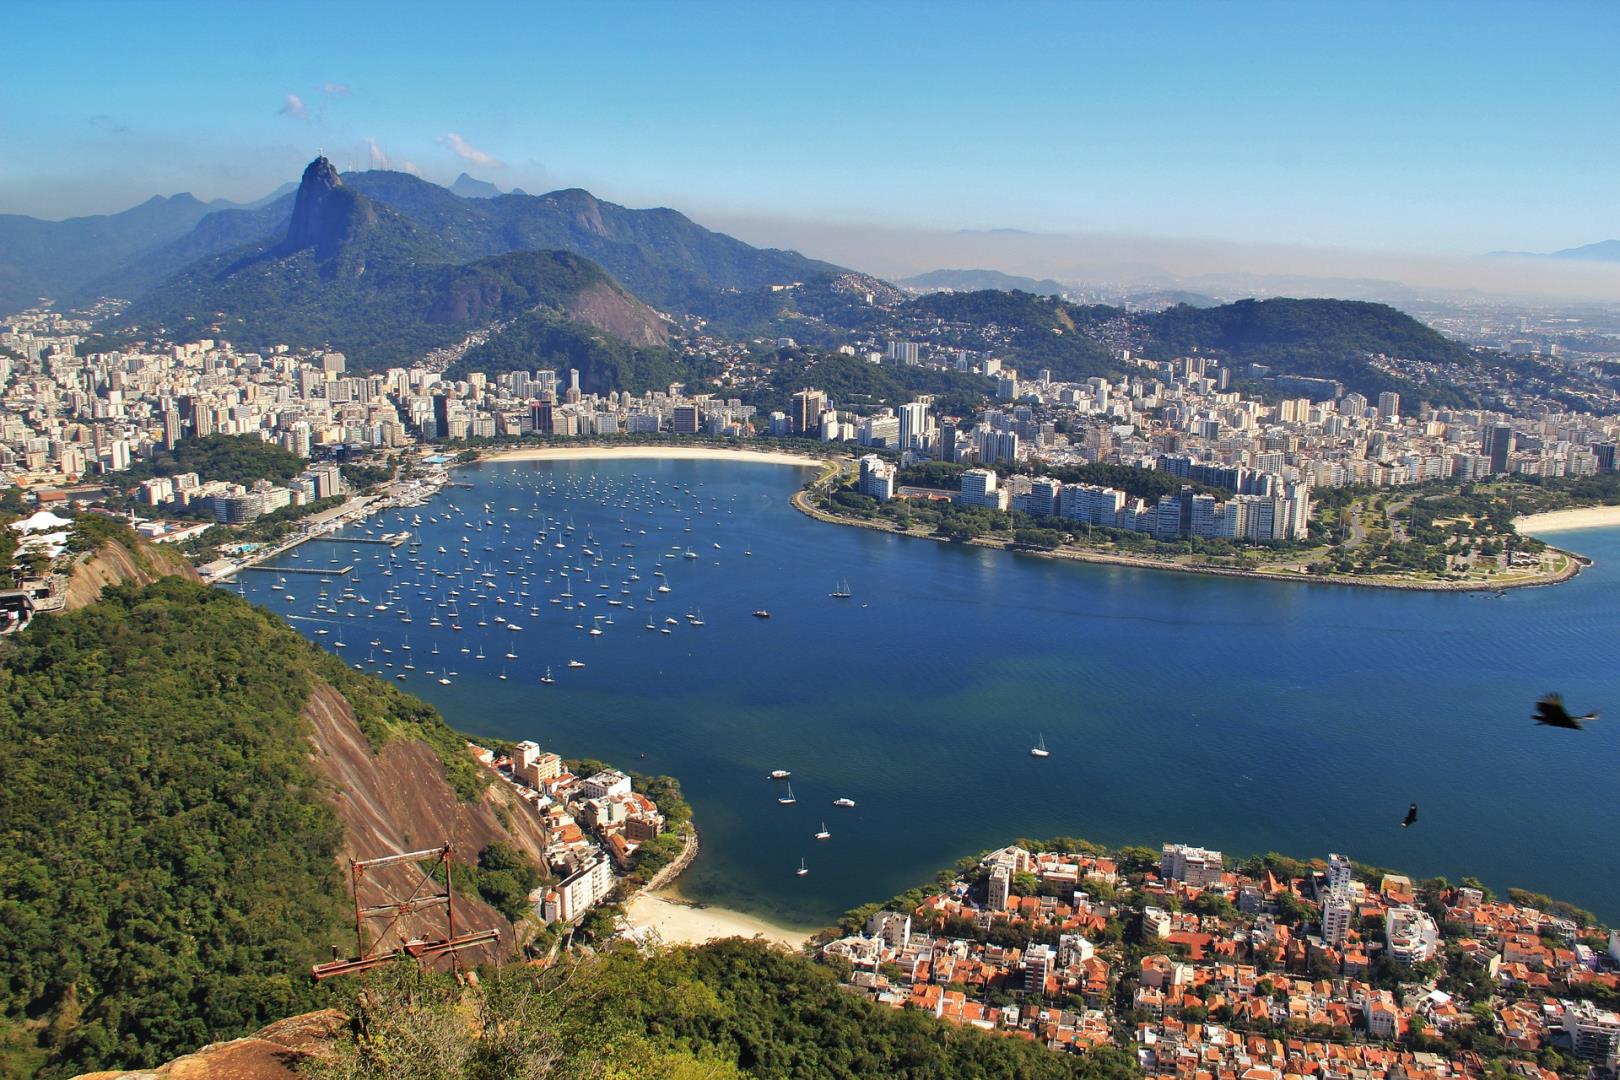 Aerial view of Rio de Janeiro - Photo Credit: Assy via Pixabay